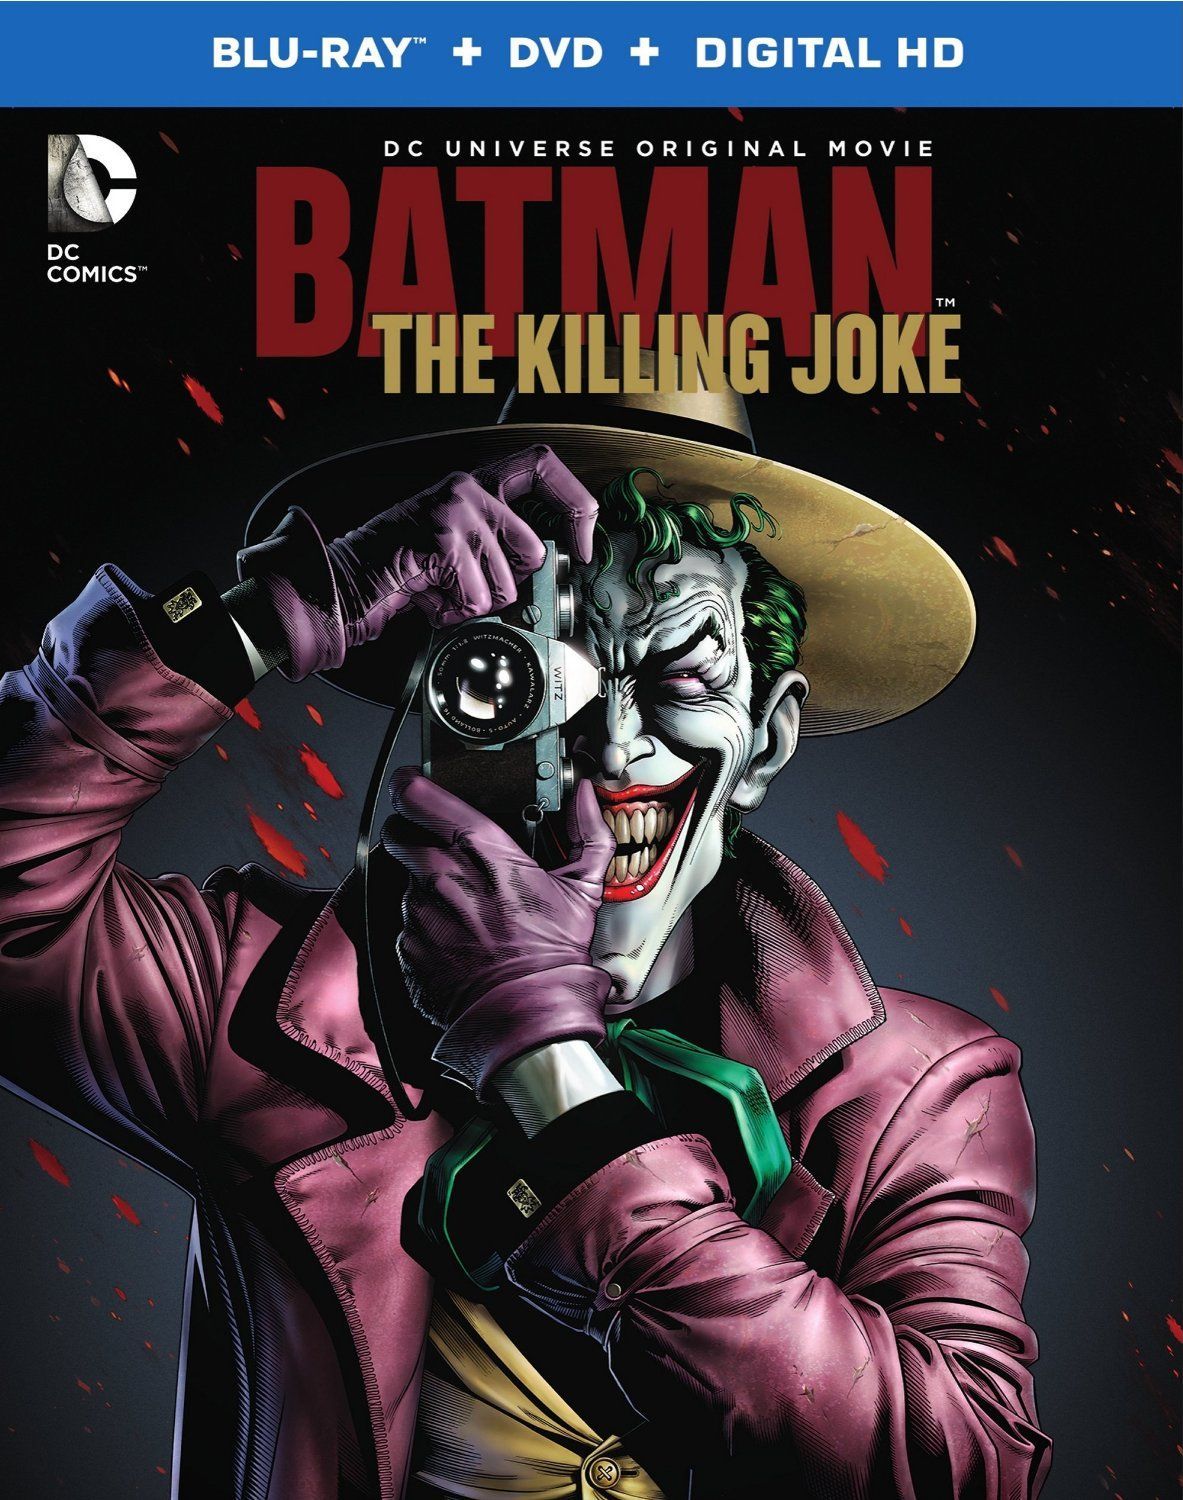 ΑΝΑΣΚΟΠΗΣΗ: Αλλιώς Solid 'Batman: The Killing Joke' πέφτει στο χειρισμό του Batgirl